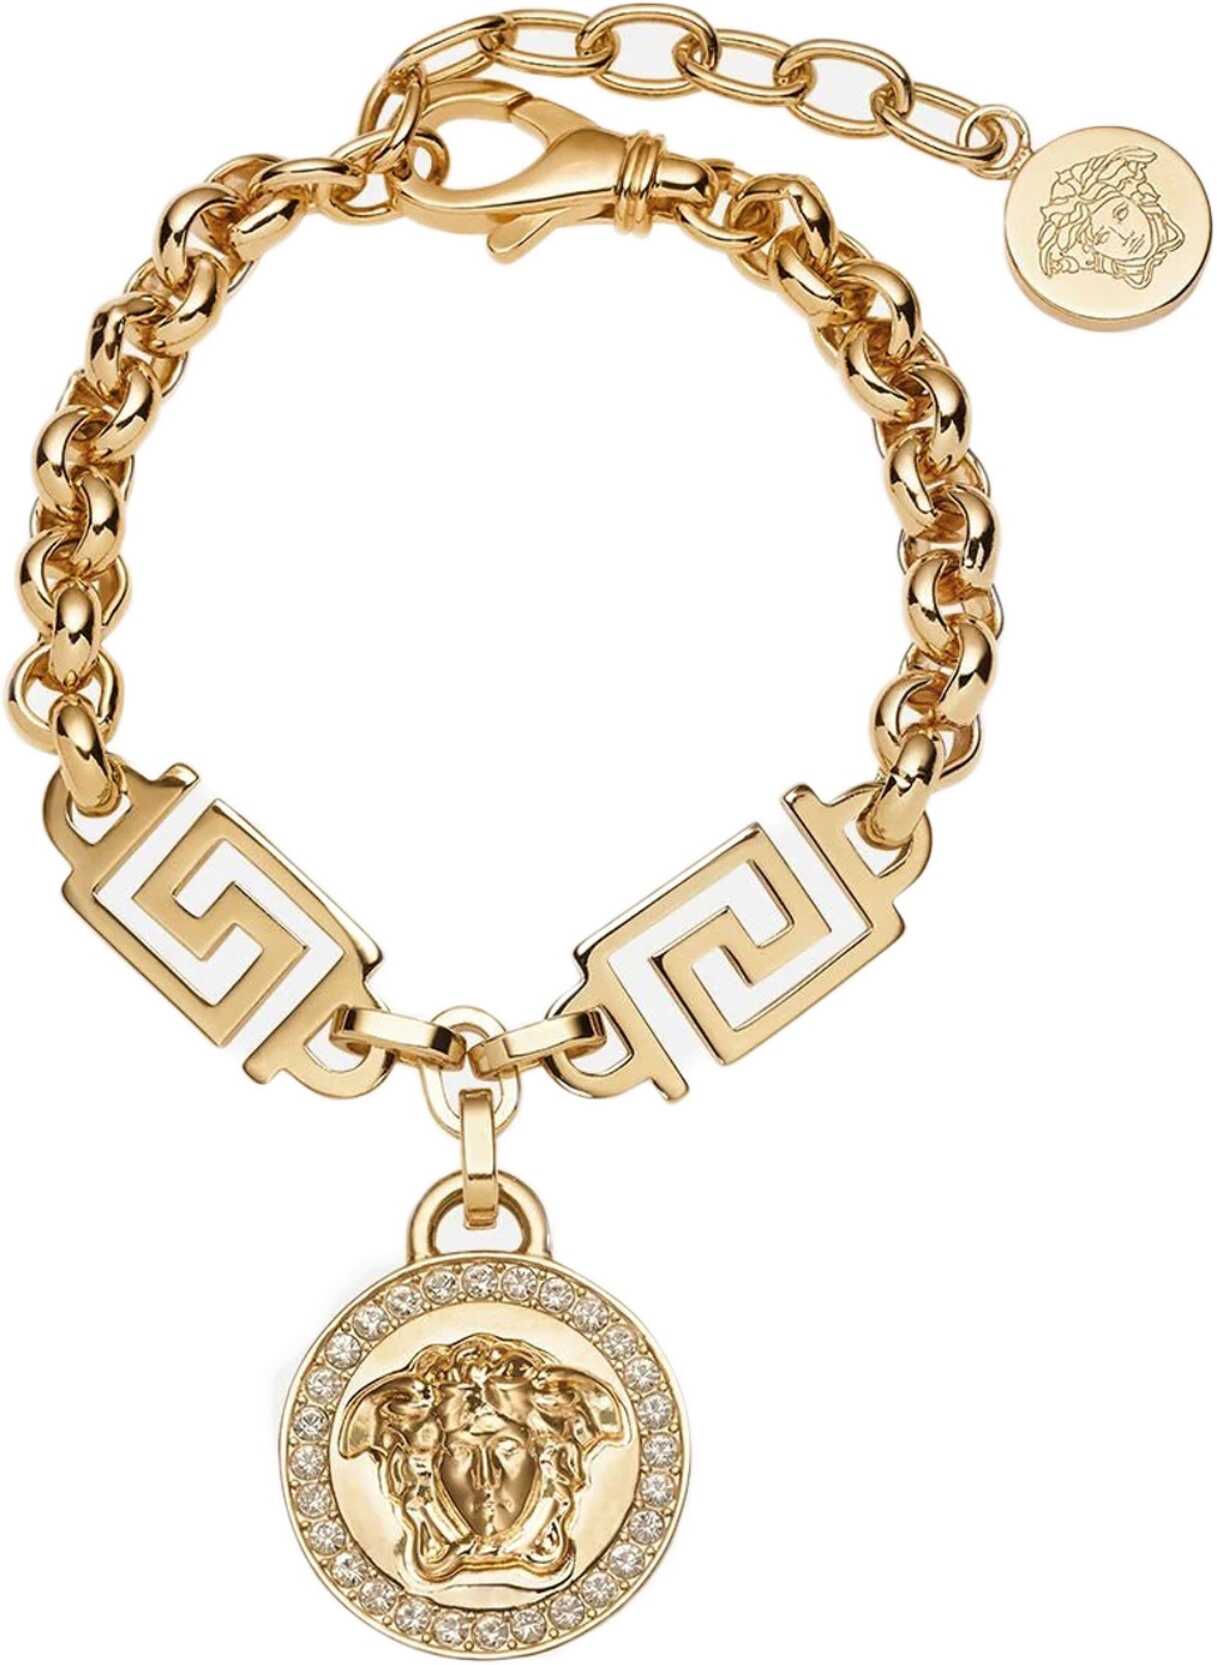 Versace The Greek Medusa Bracelet GOLD image6